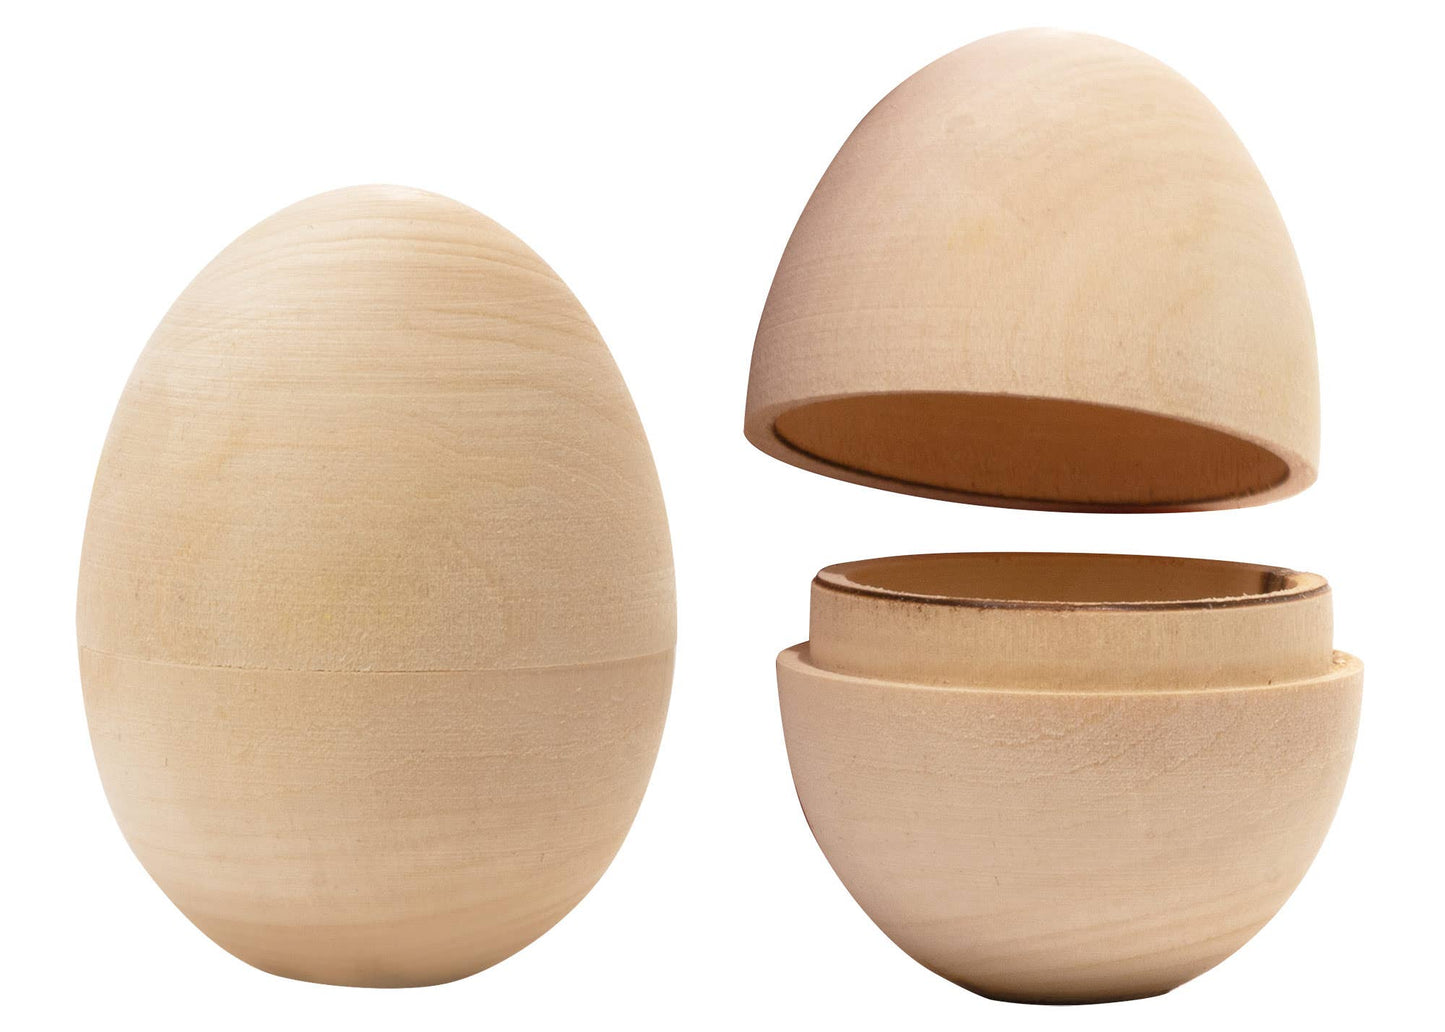 Handmade  hollow Wooden Eggs that open